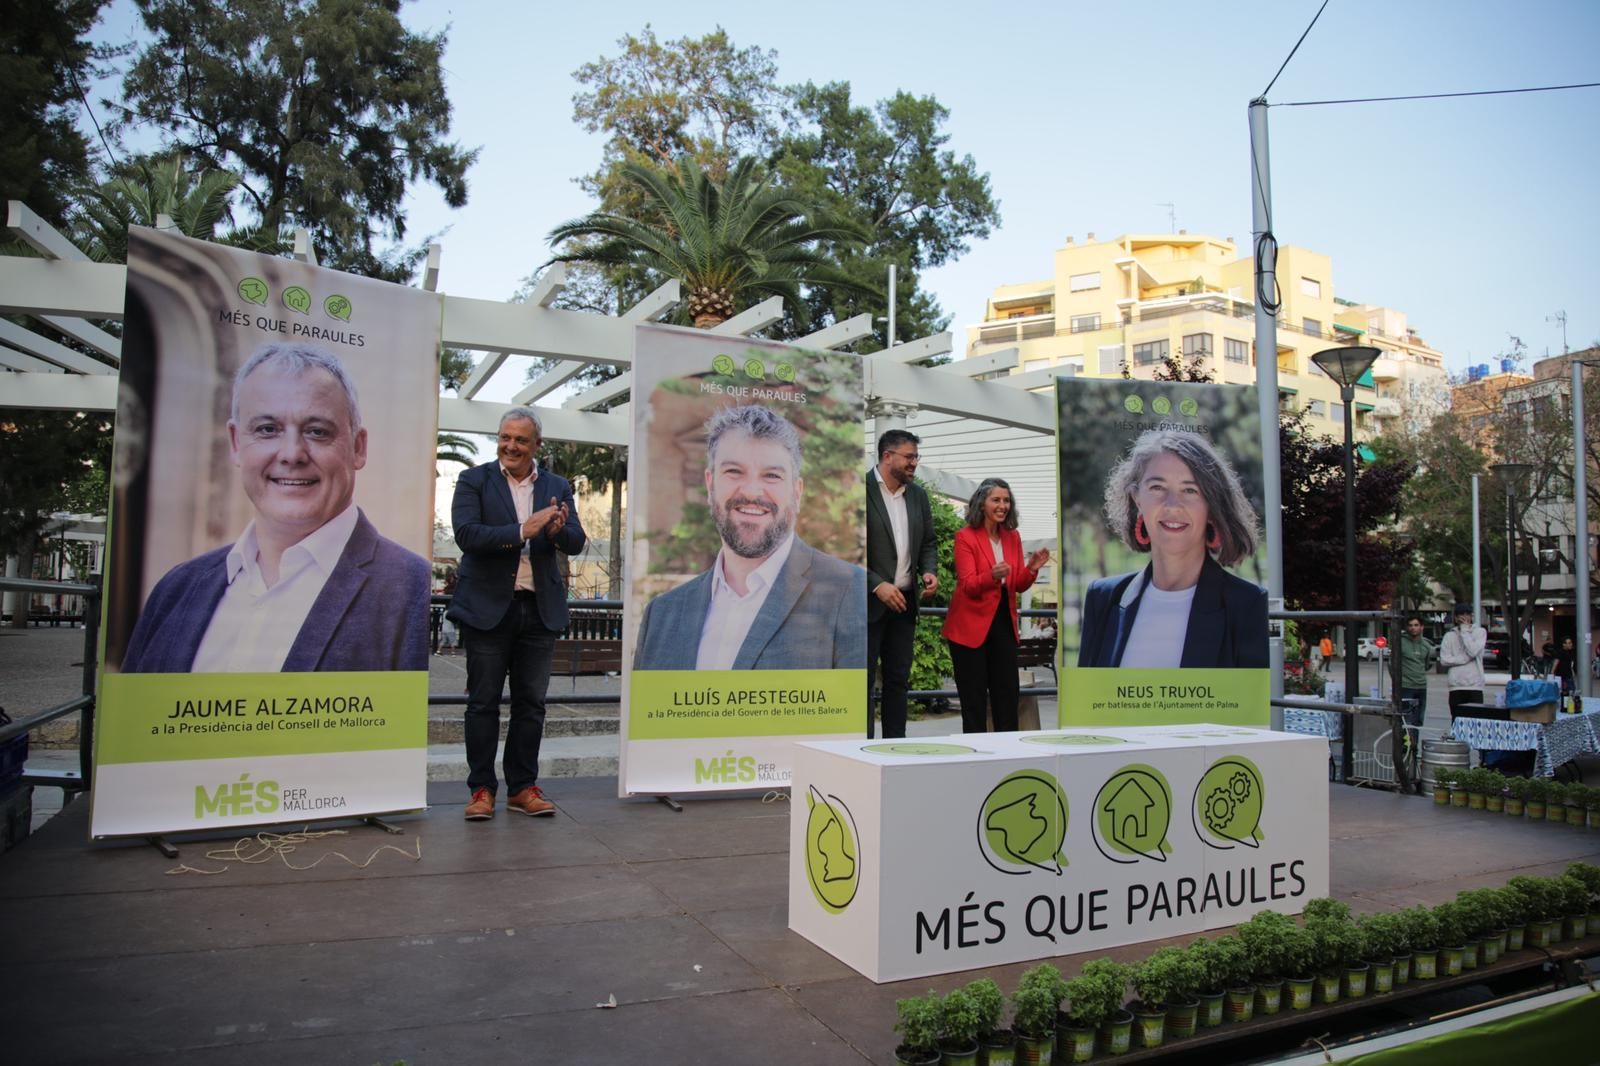 Arranque de la campaña electoral en Mallorca